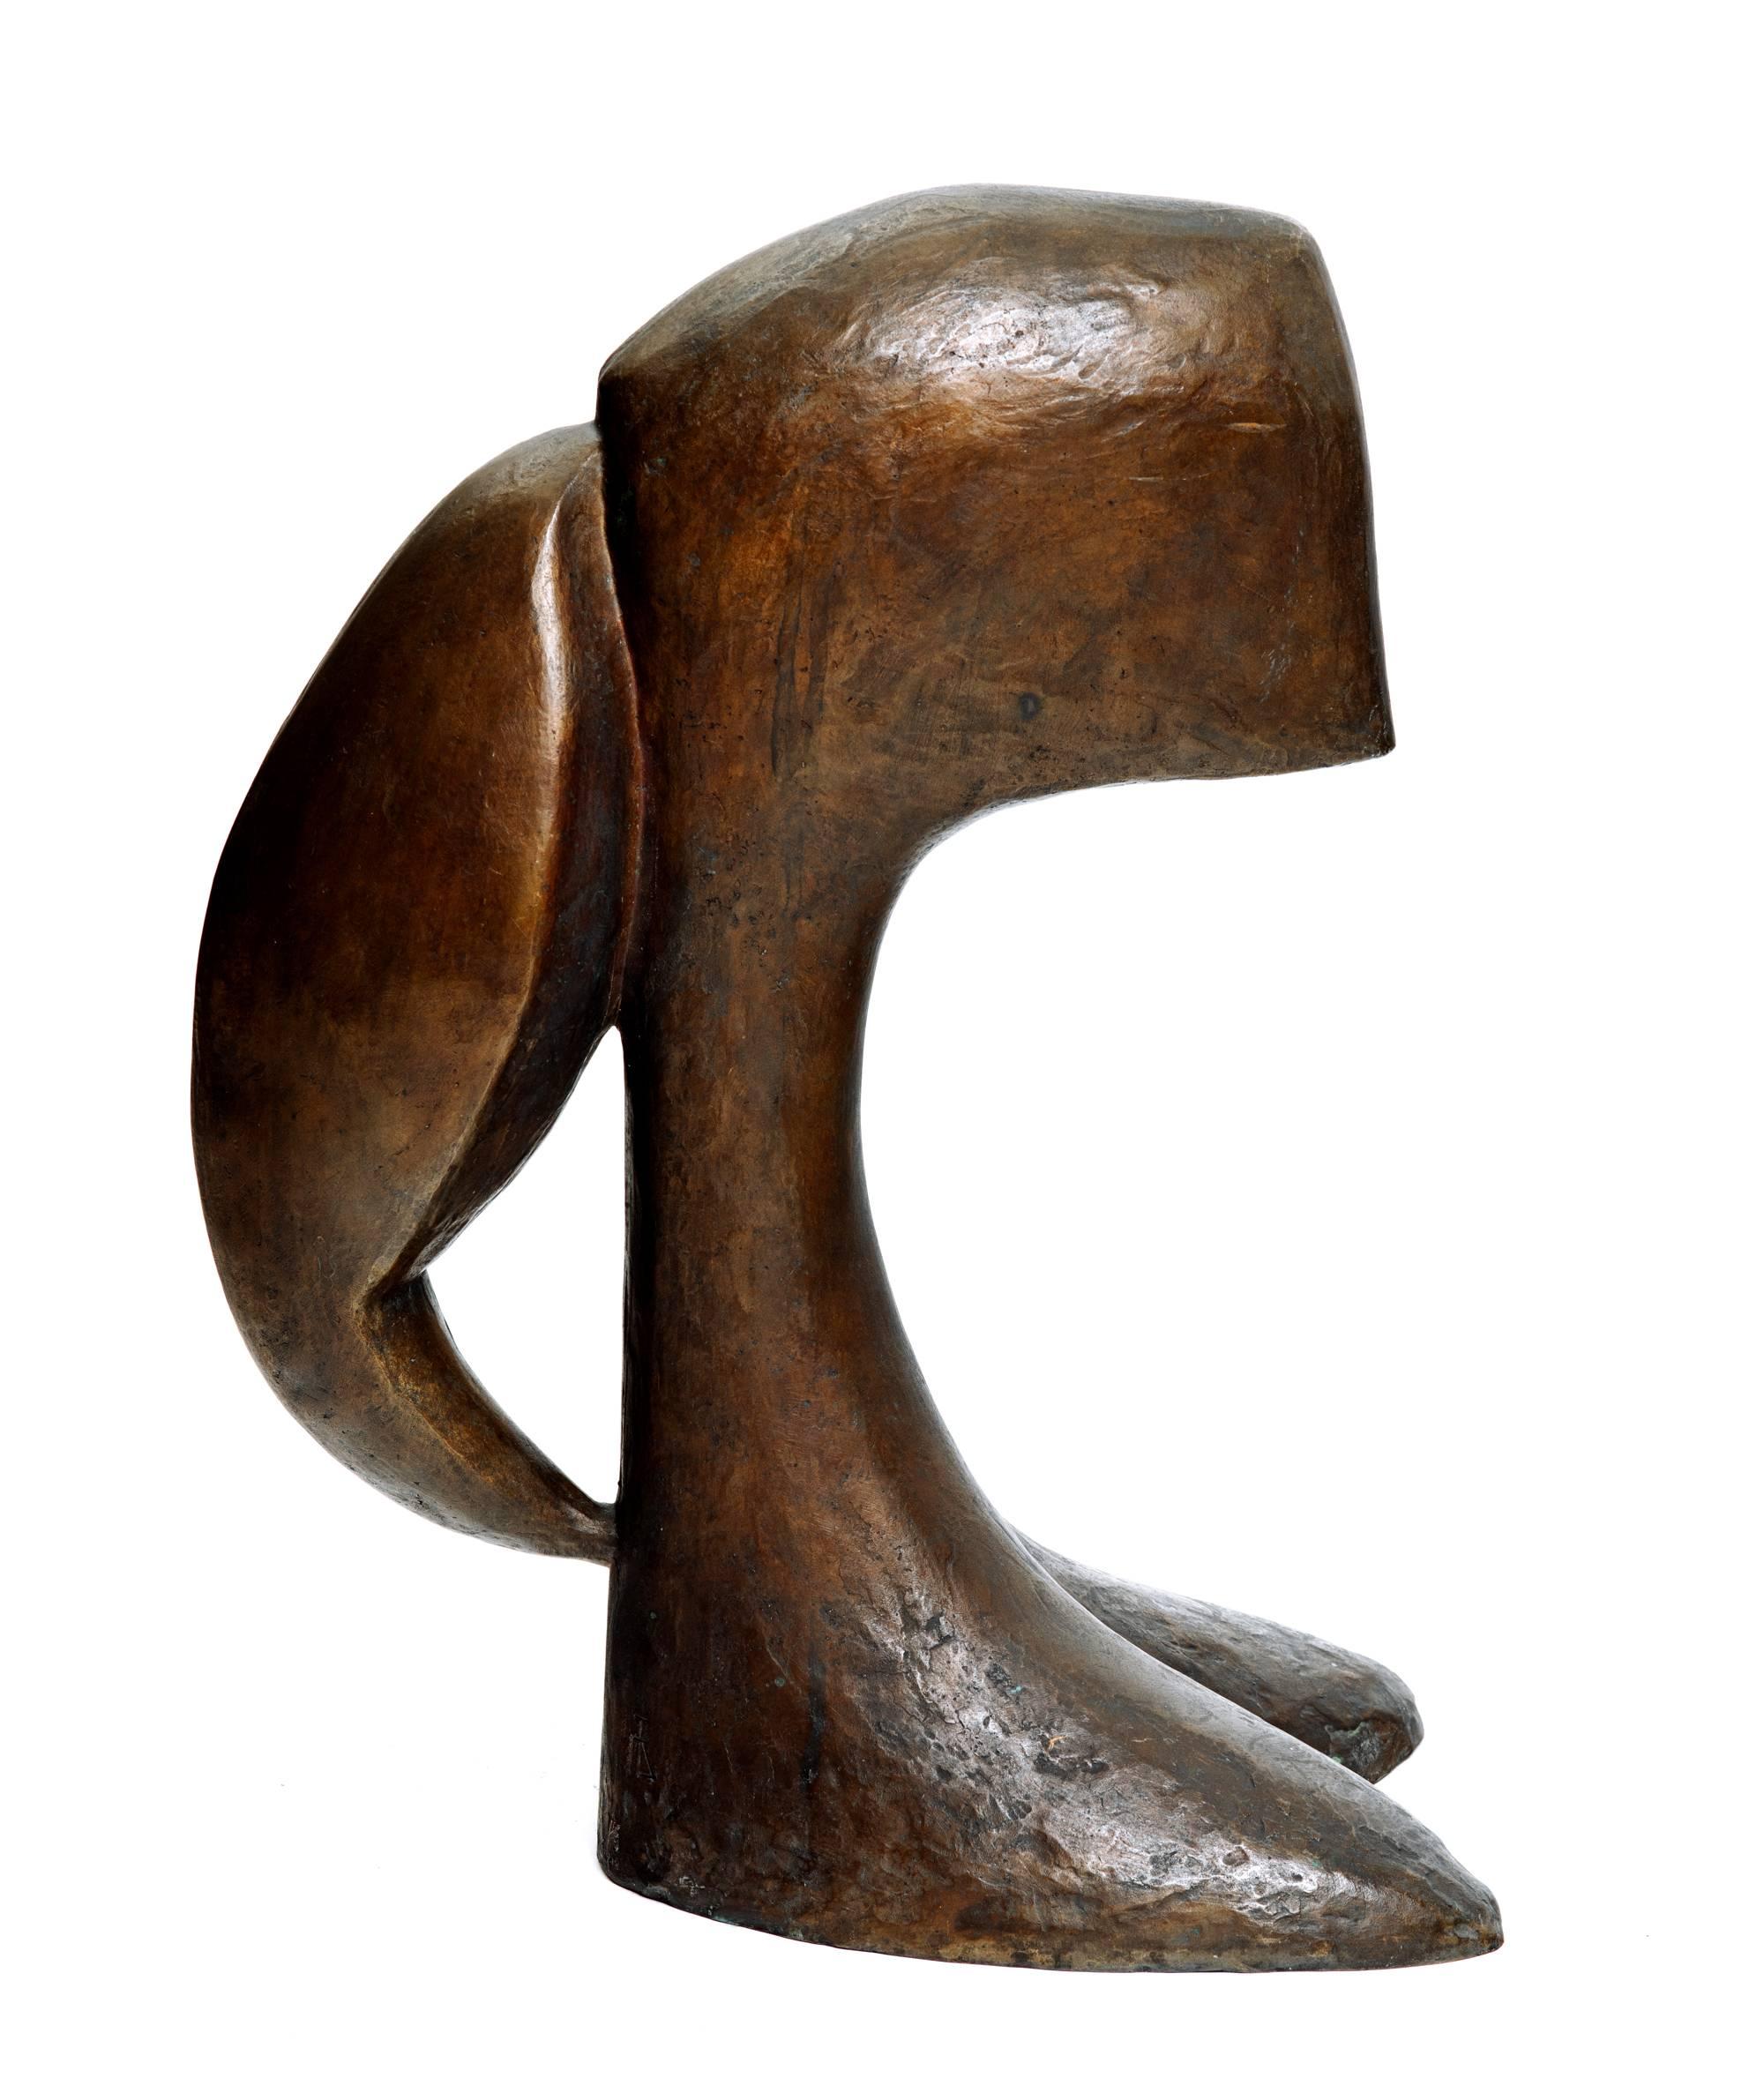 Rare et importante sculpture abstraite figurative en bronze, Claire, de Maxime Adam-Tessier (1920-2000) vers les années 1960. Son buste unique est atypique de son travail. Signé d'un monogramme et marqué Susse Fondeur Paris, il s'agit du numéro 4